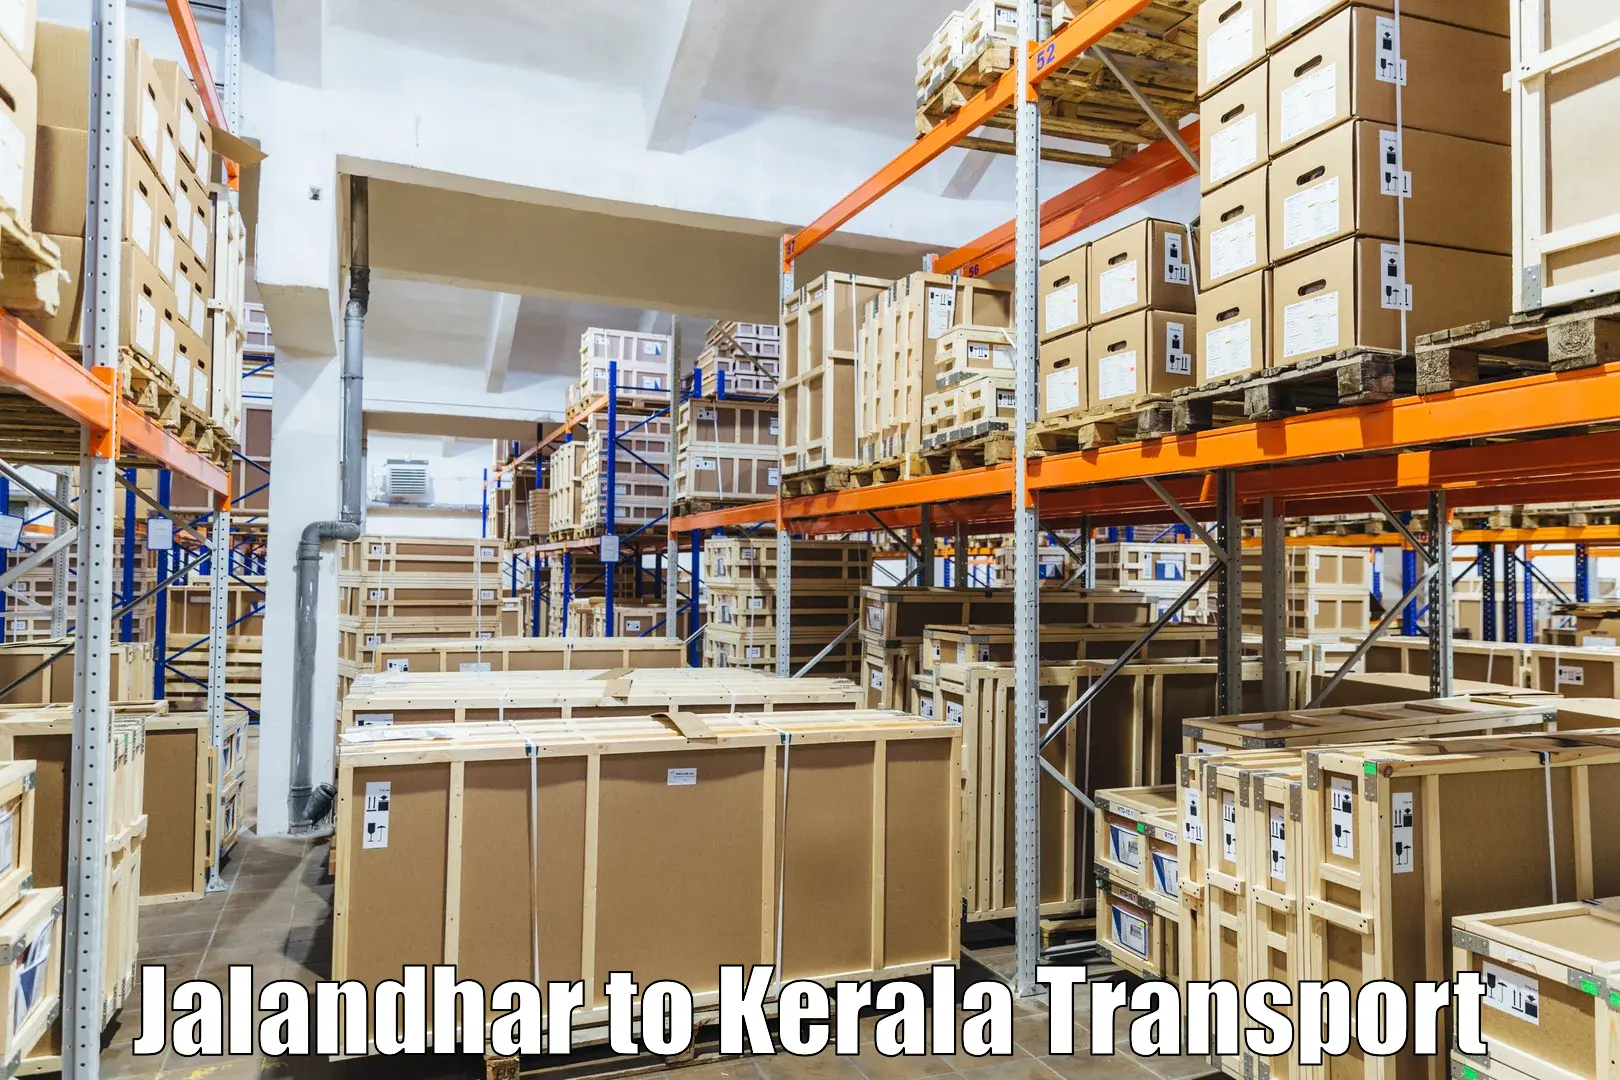 Luggage transport services Jalandhar to Mundakayam